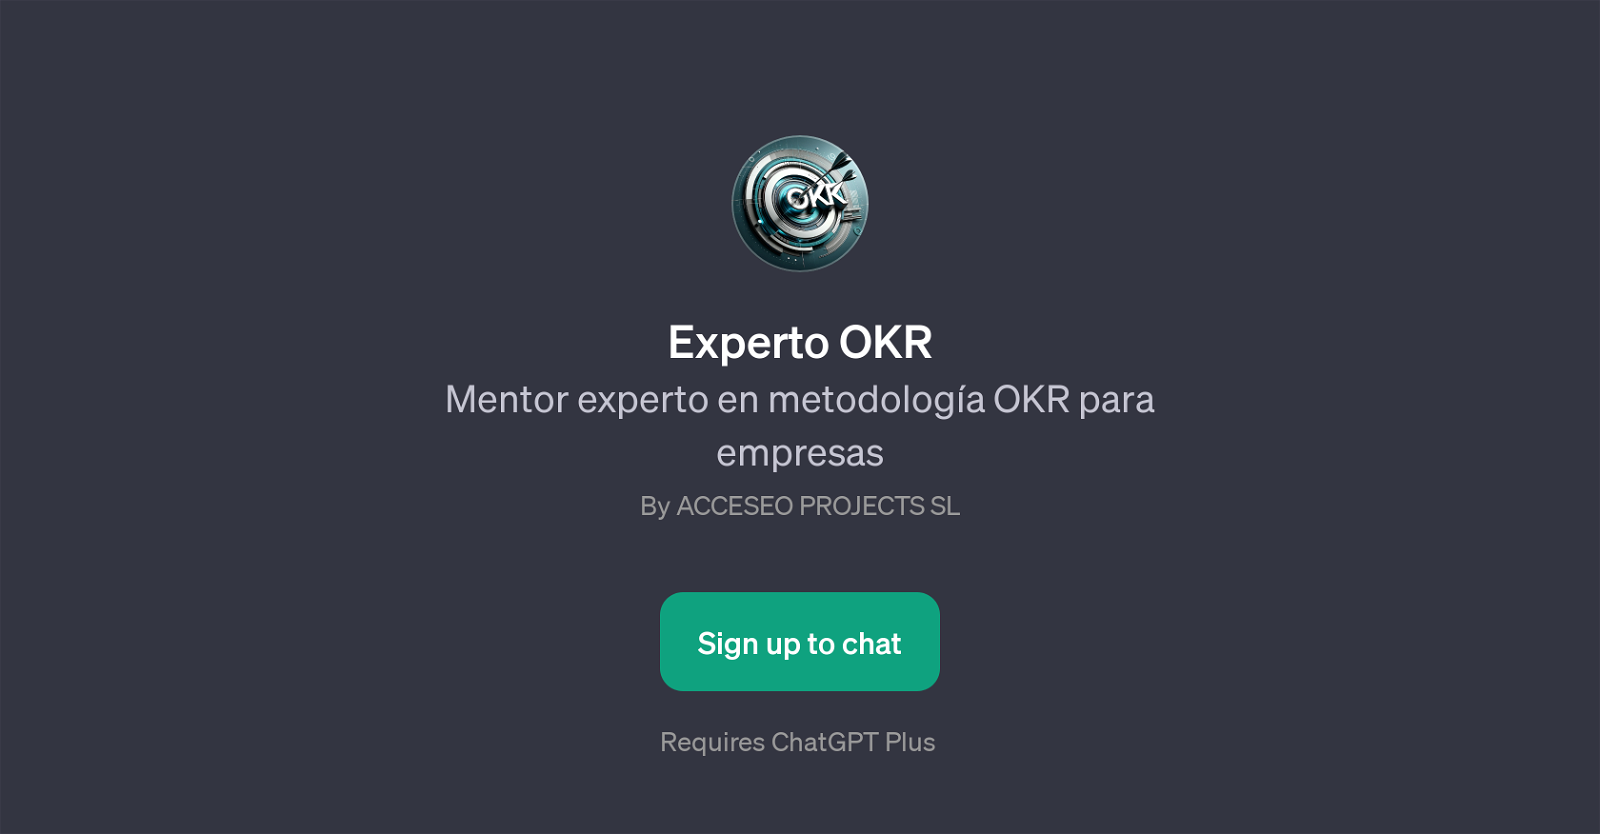 Experto OKR website